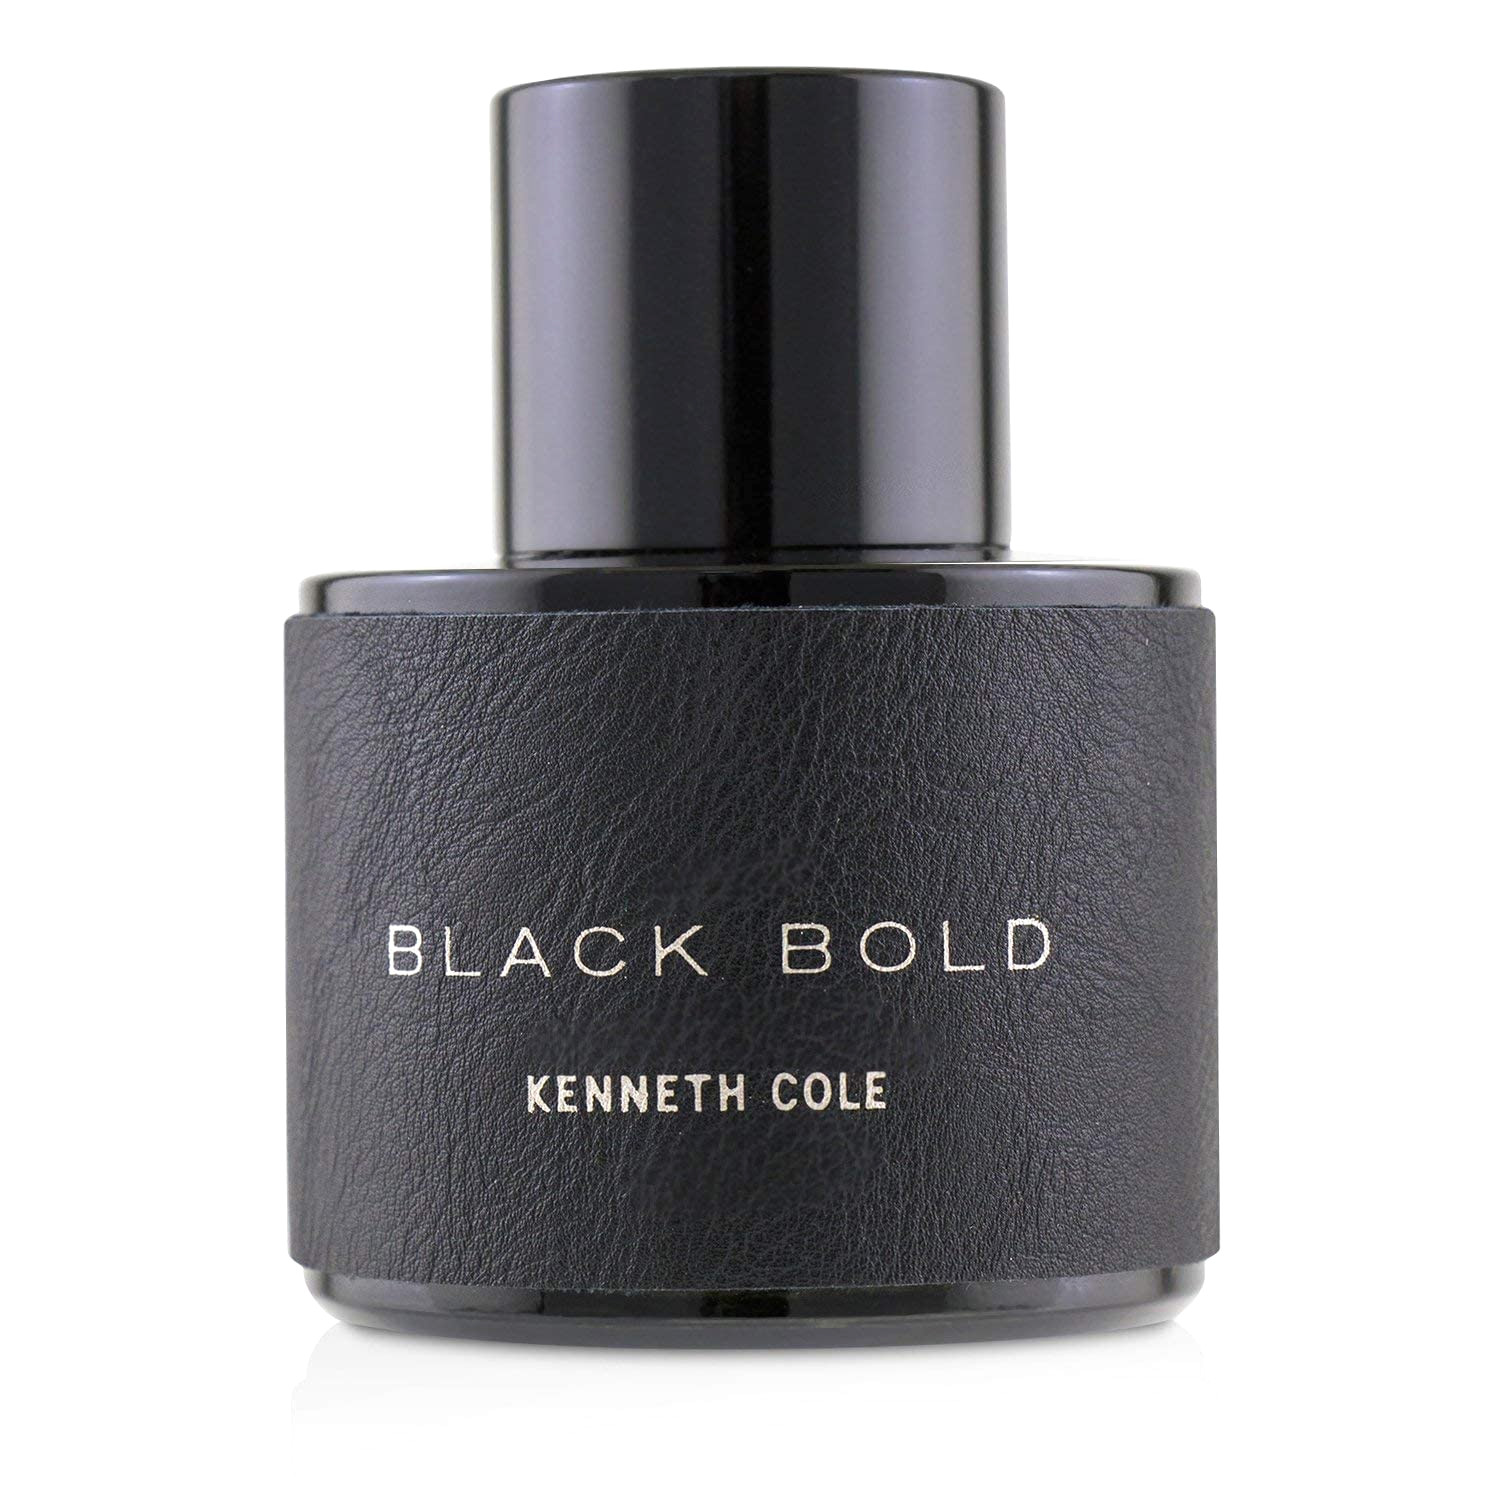 Вода парфюмерная Kenneth Cole Black Bold мужская, 100 мл peche monnaie мужской махровый халат black jack 937